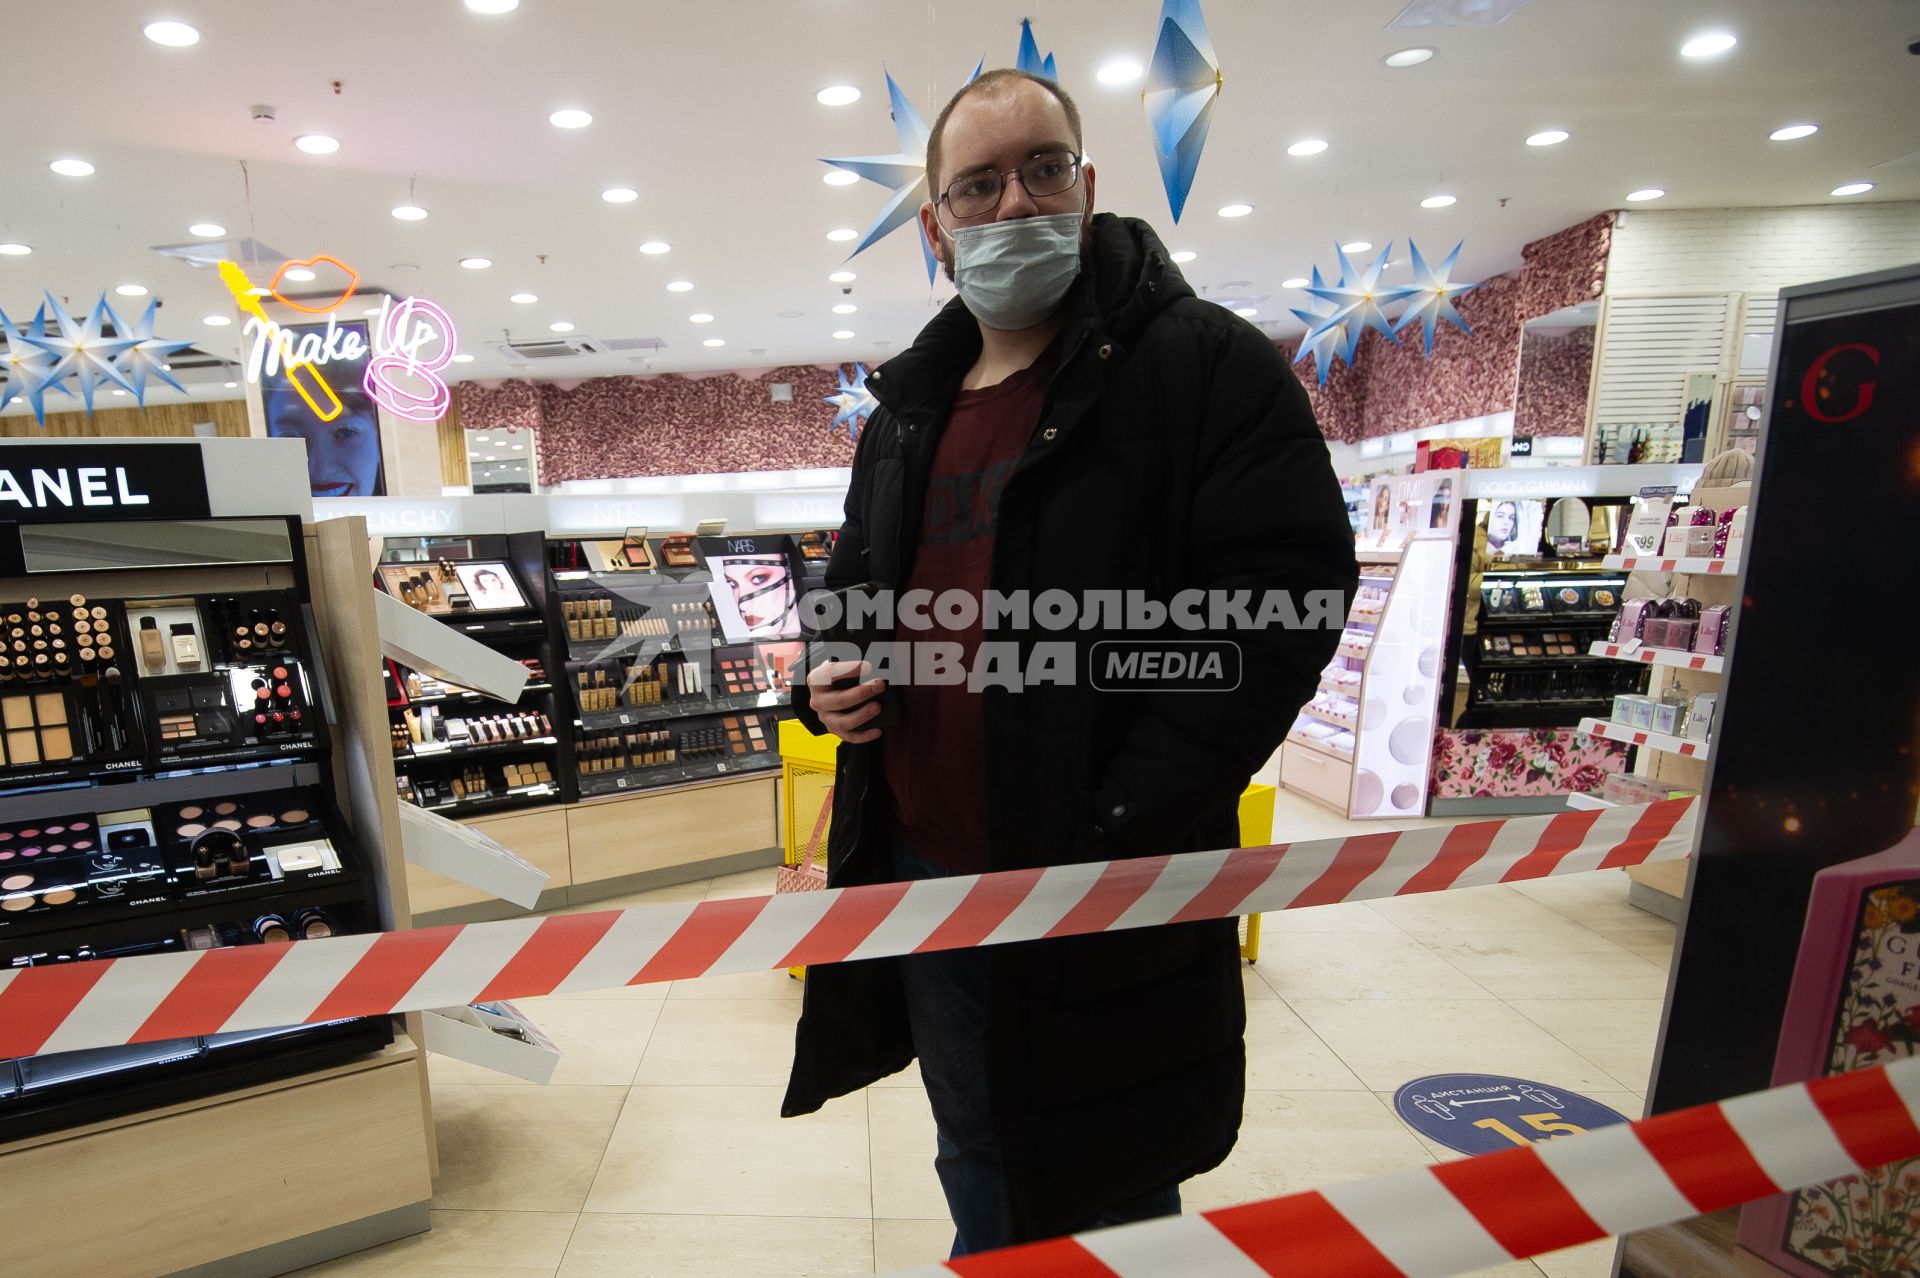 Санкт-Петербург. Мужчина в магазине косметики у ограничительной ленты.